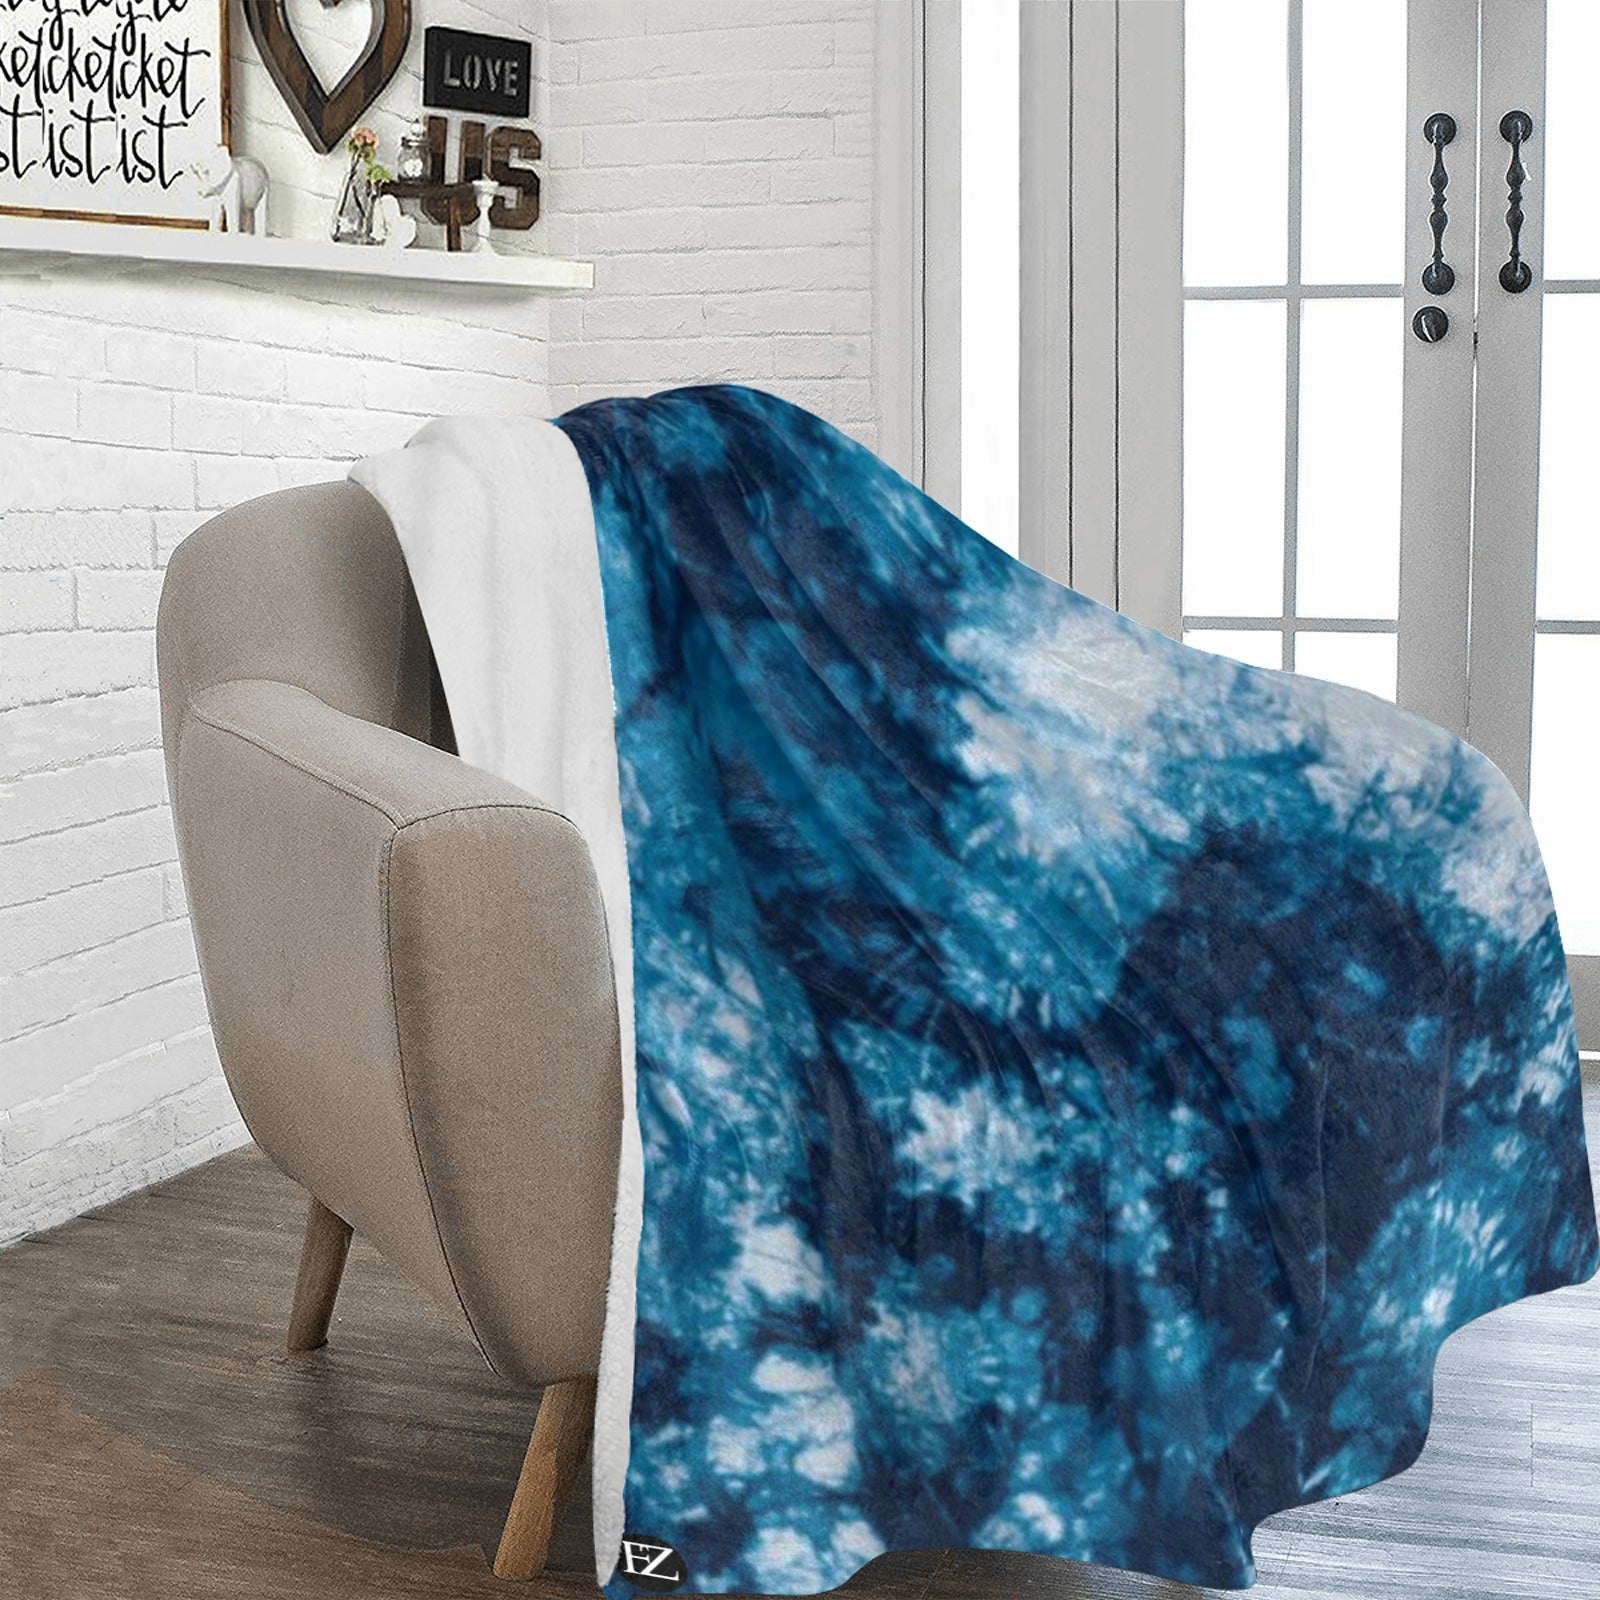 fz blue tye blanket ultra-soft micro fleece blanket 70"x80"